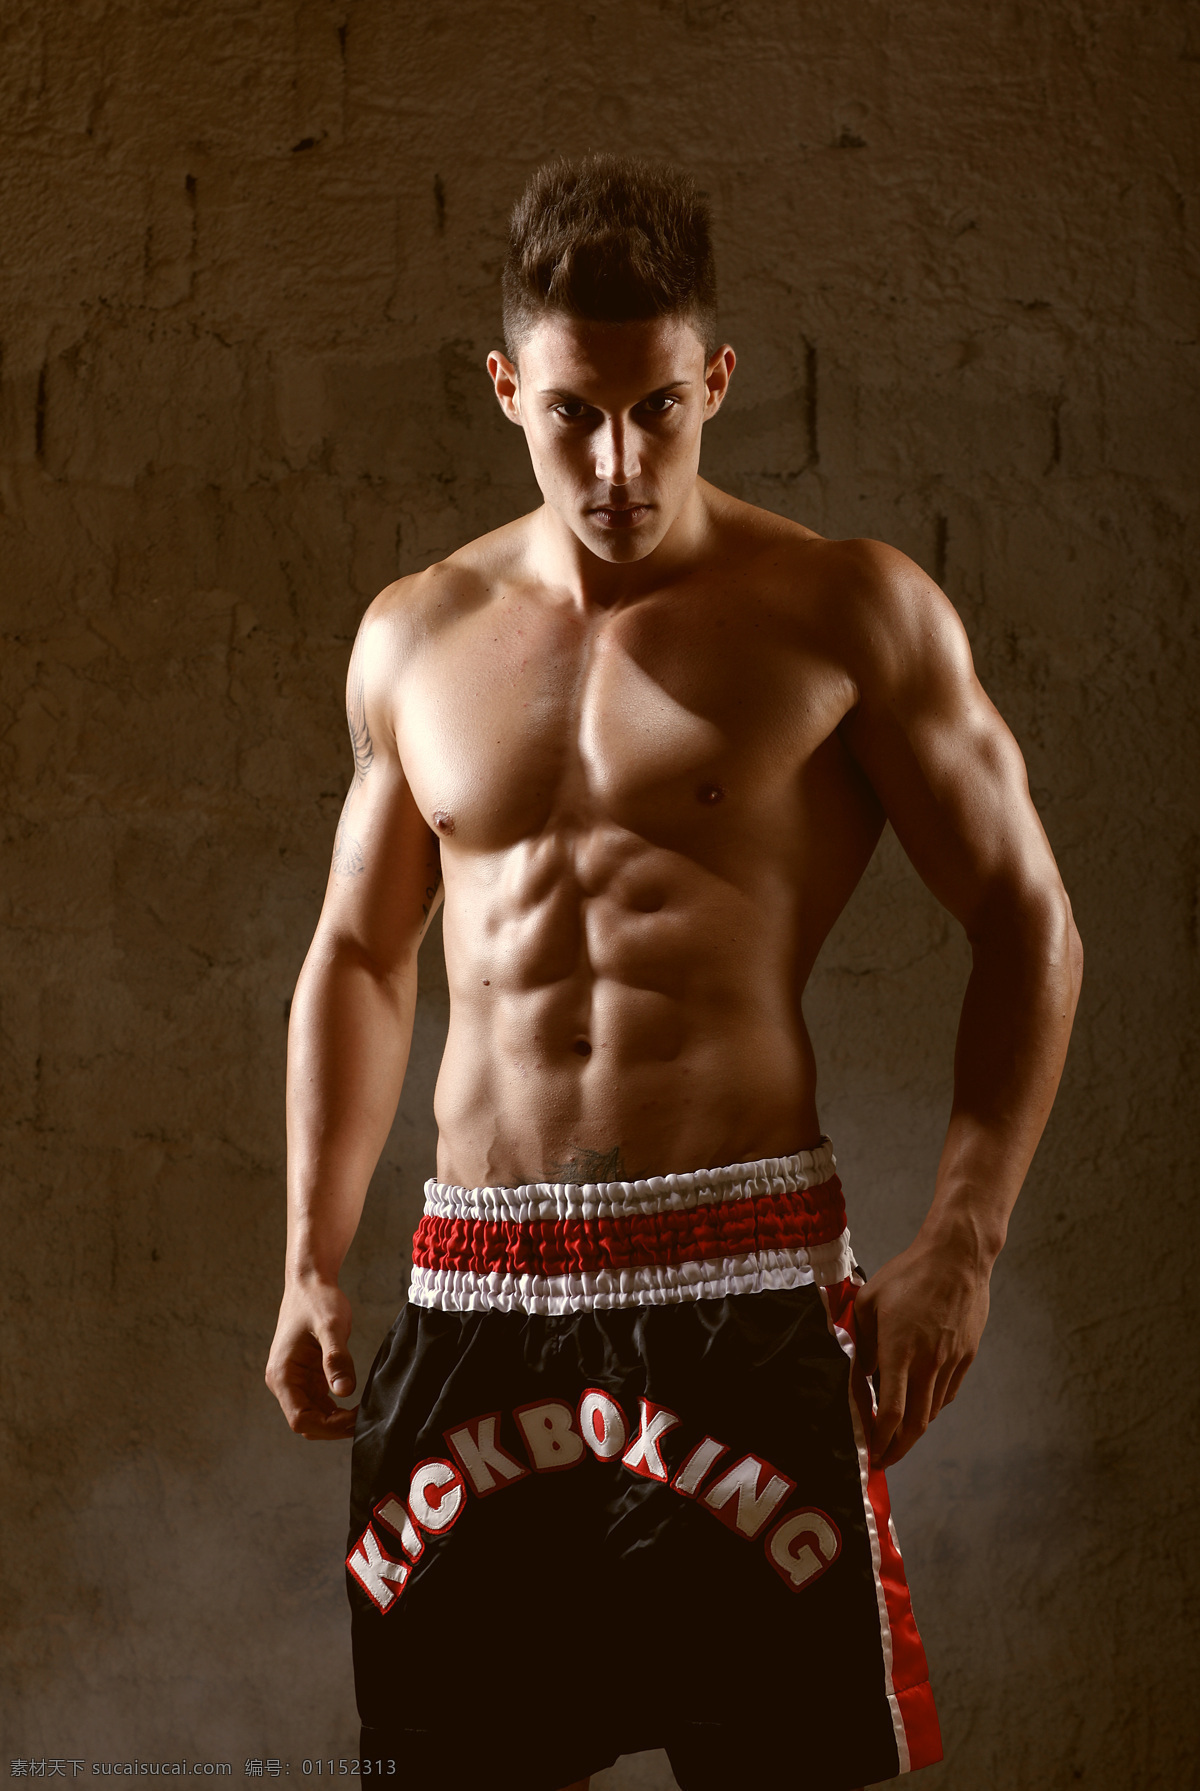 展示 肌肉 男人 跆拳道 健身 运动 体育运动 生活百科